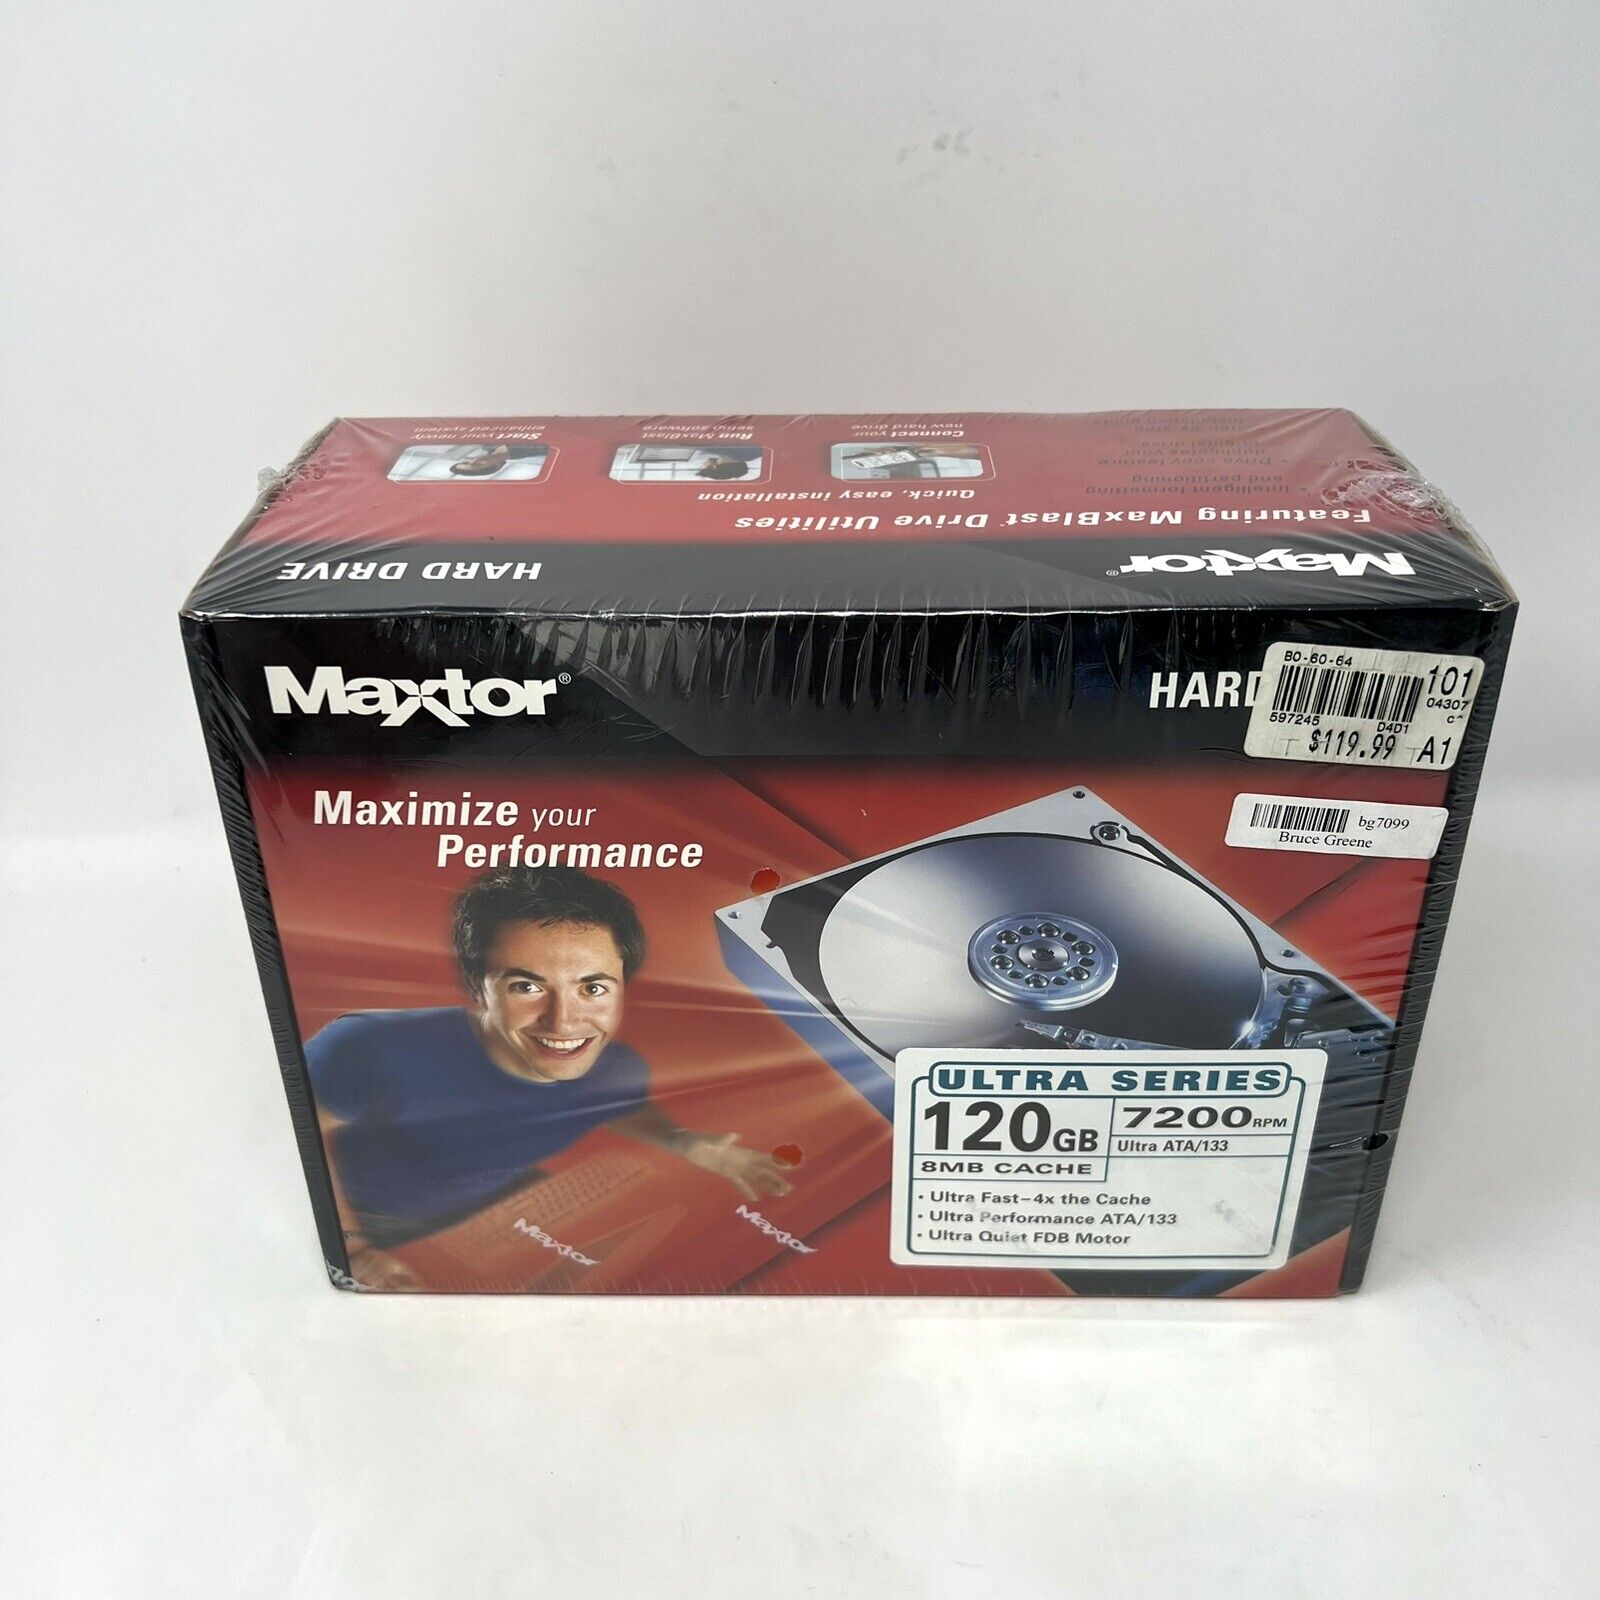 VTG Maxtor DiamondMax Plus Ultra Series 120GB 7200 RPM Hard Drive NEW sealed